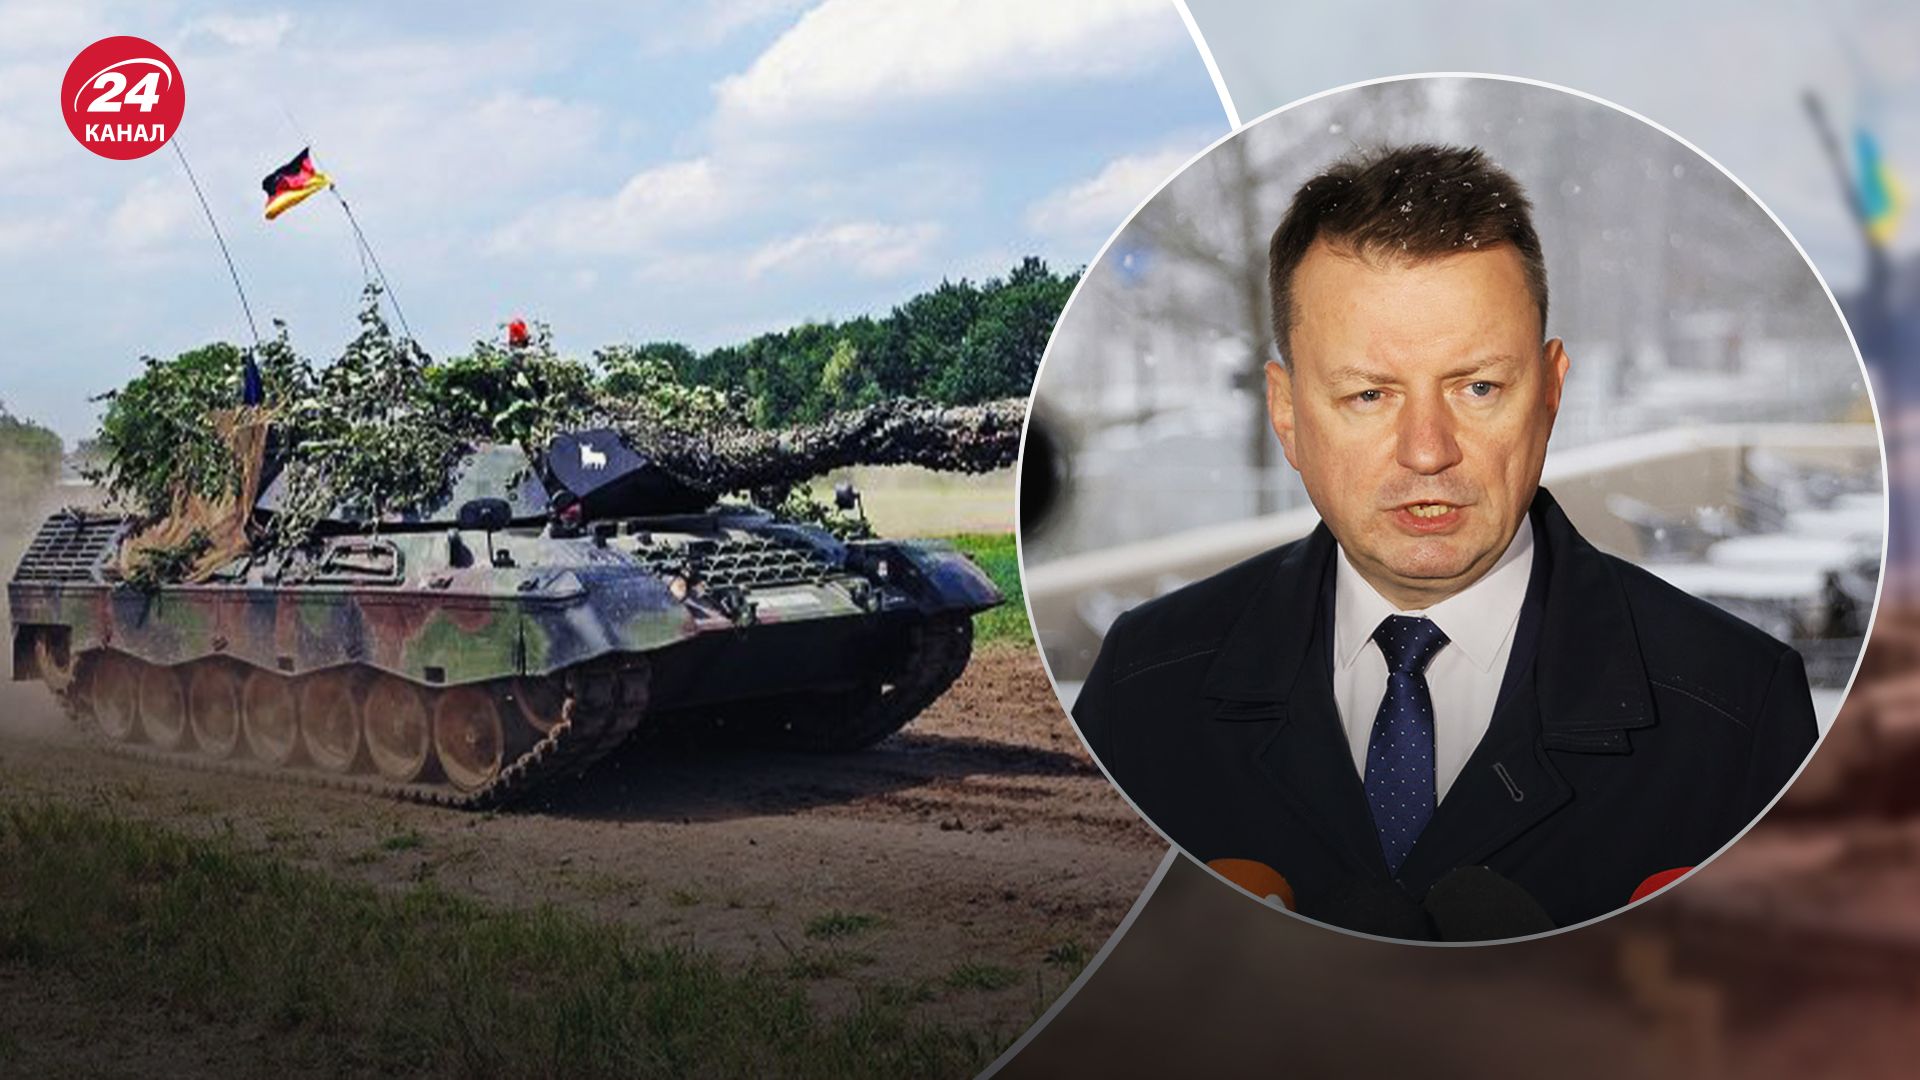 Несмотря на решение "Рамштайна": в Польше оптимистично настроены по поставкам Leopard в Украину - 24 Канал